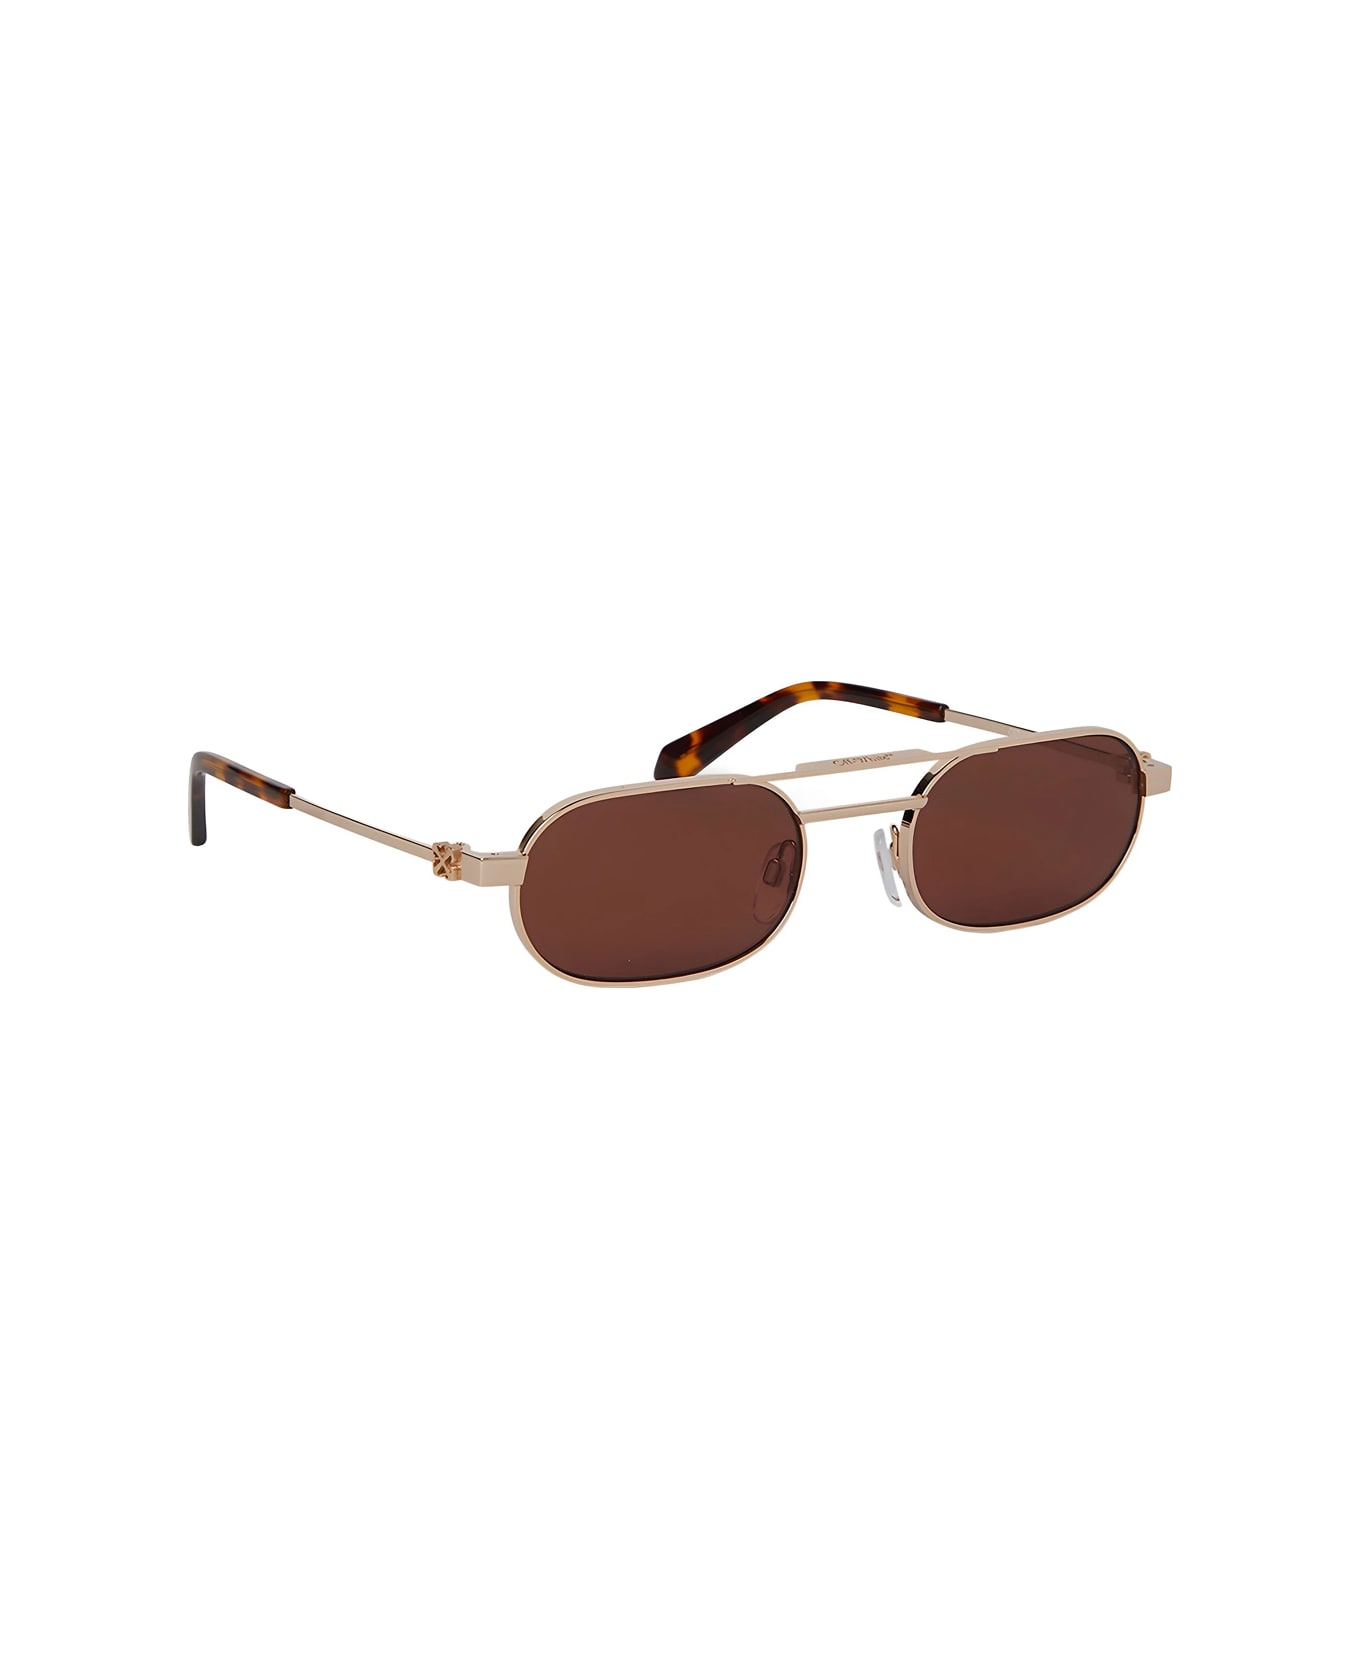 Off-White Oeri123 Vaiden 7664 Gold Brown Sunglasses - Oro